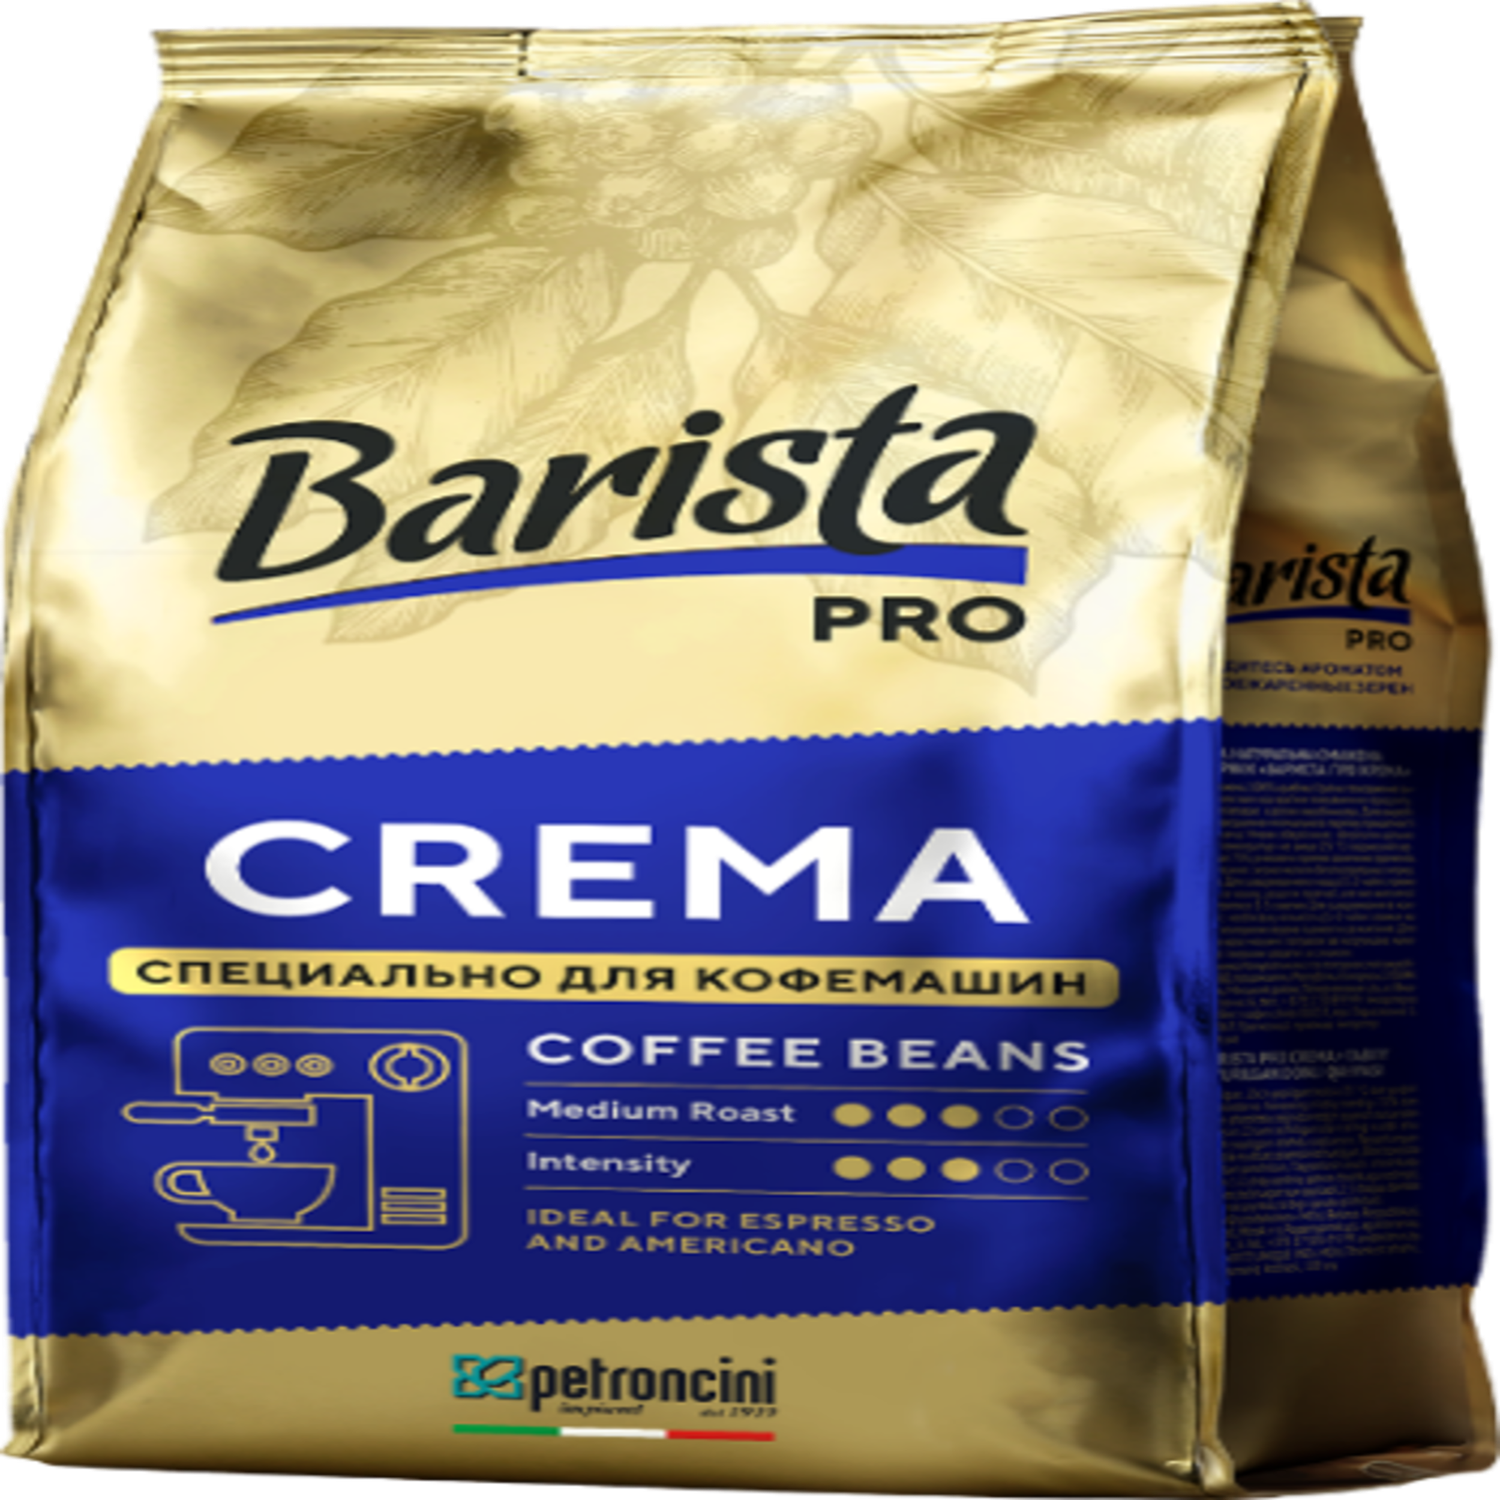 Кофе в зёрнах Barista Pro натуральный жареный в Barista pro Crema 1кг - фото 1